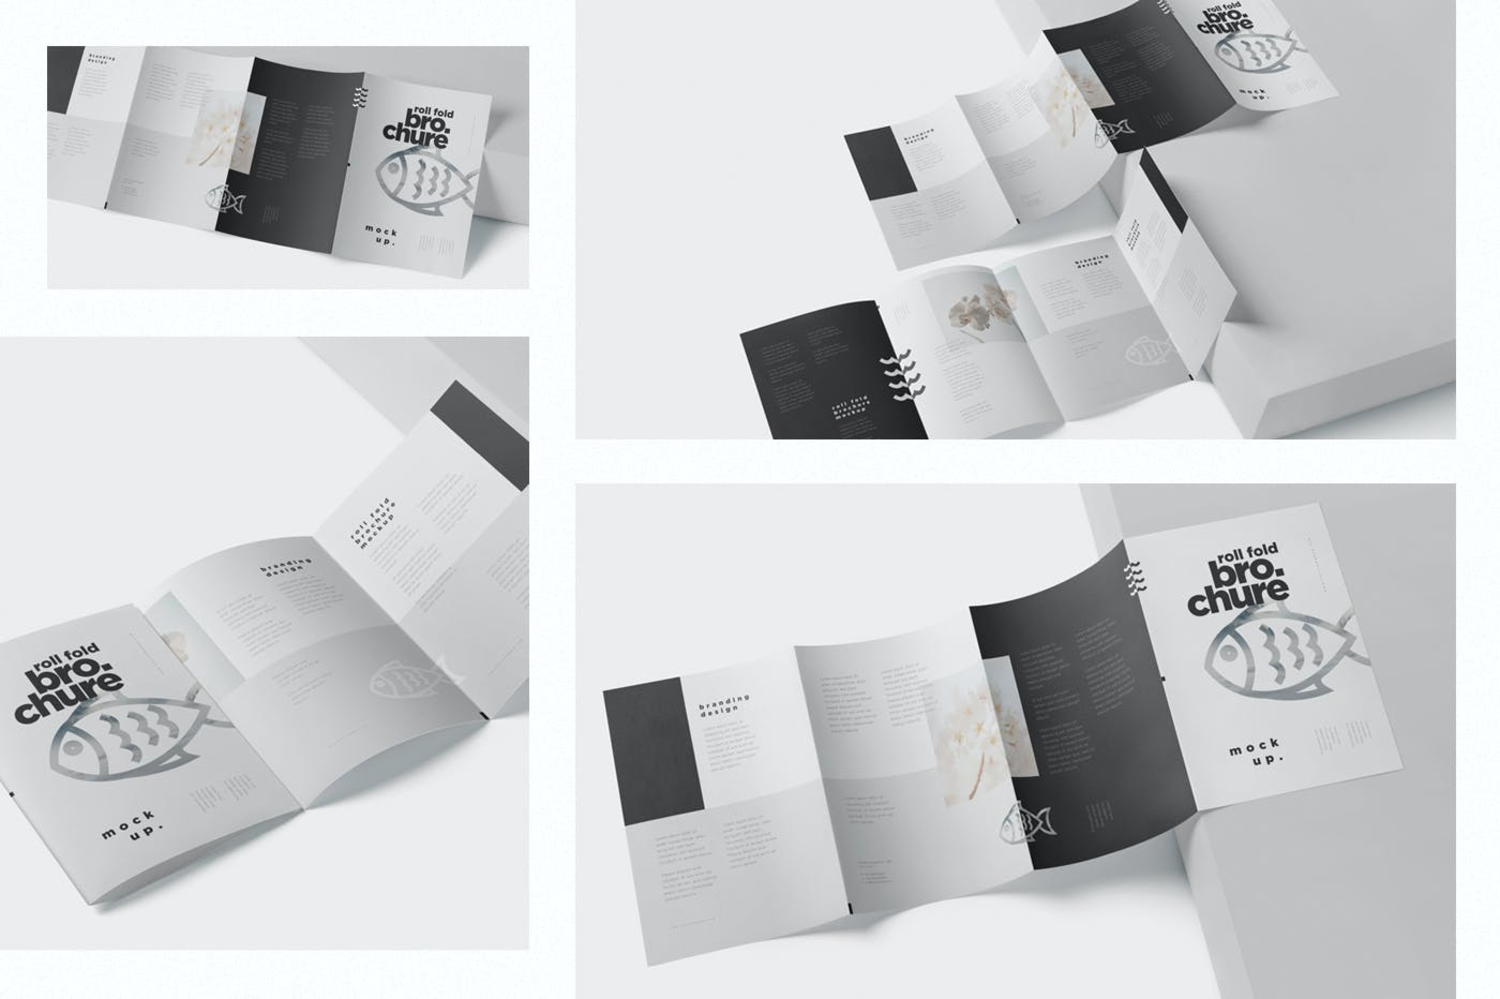 3608 4款A4四折页宣传册设计PSD样机 Roll Fold Brochure Mockup Set – Din A4 A5 A6